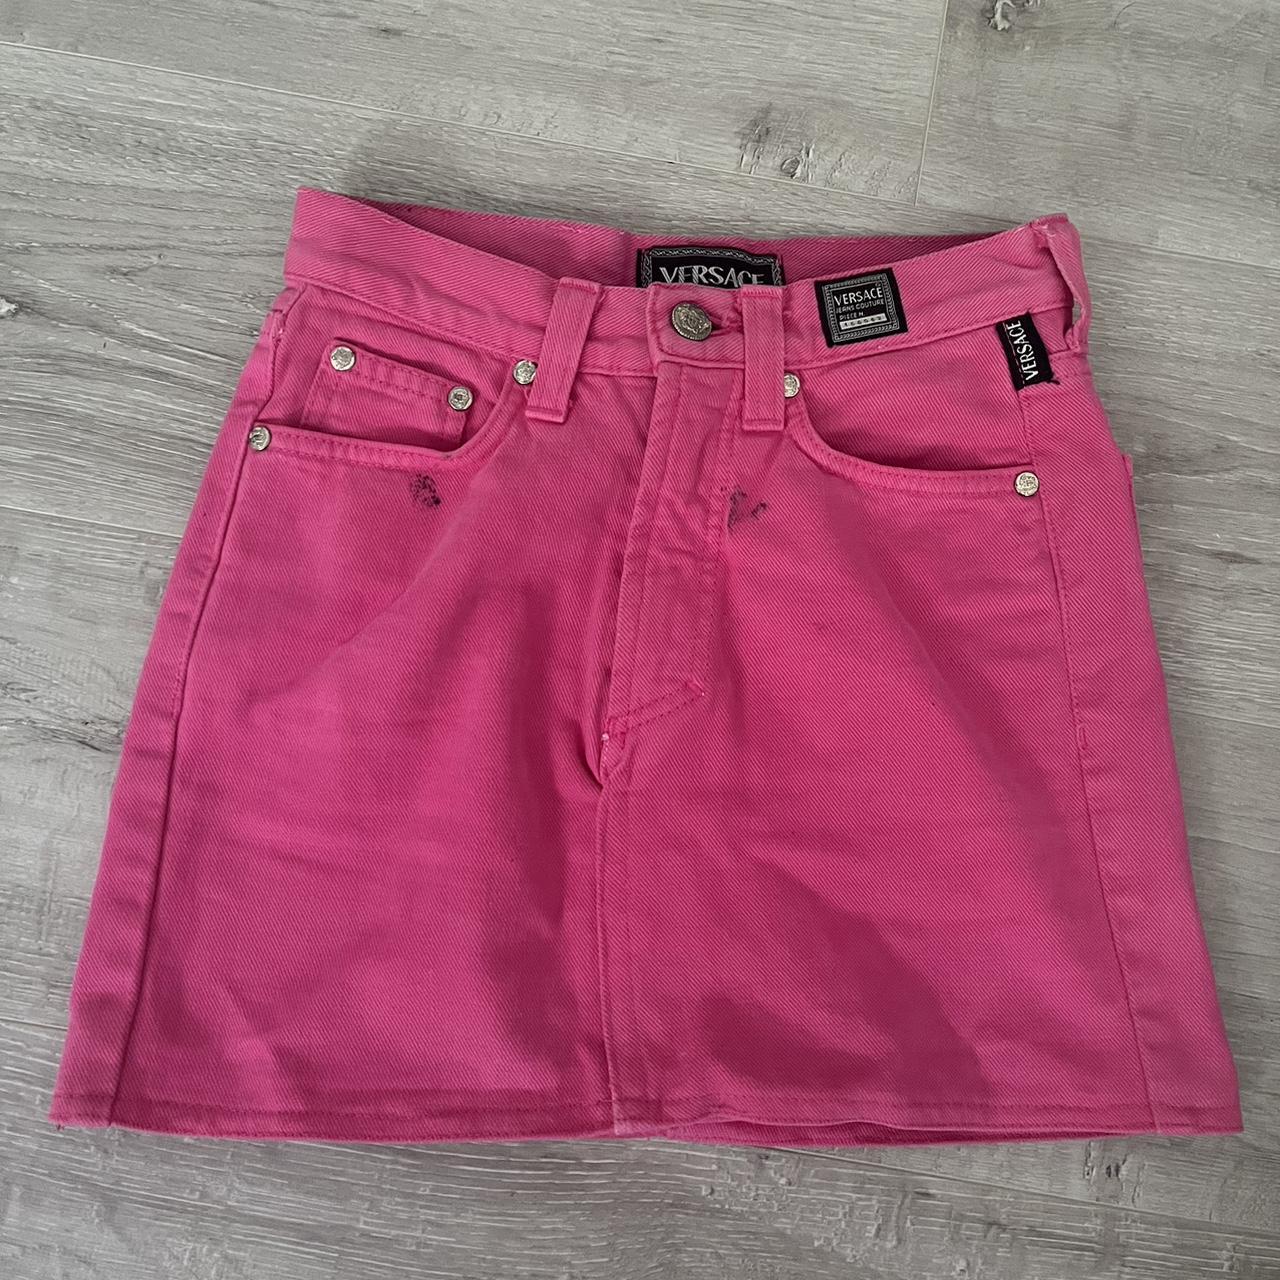 hot pink versace denim mini skirt 24 waist would... - Depop